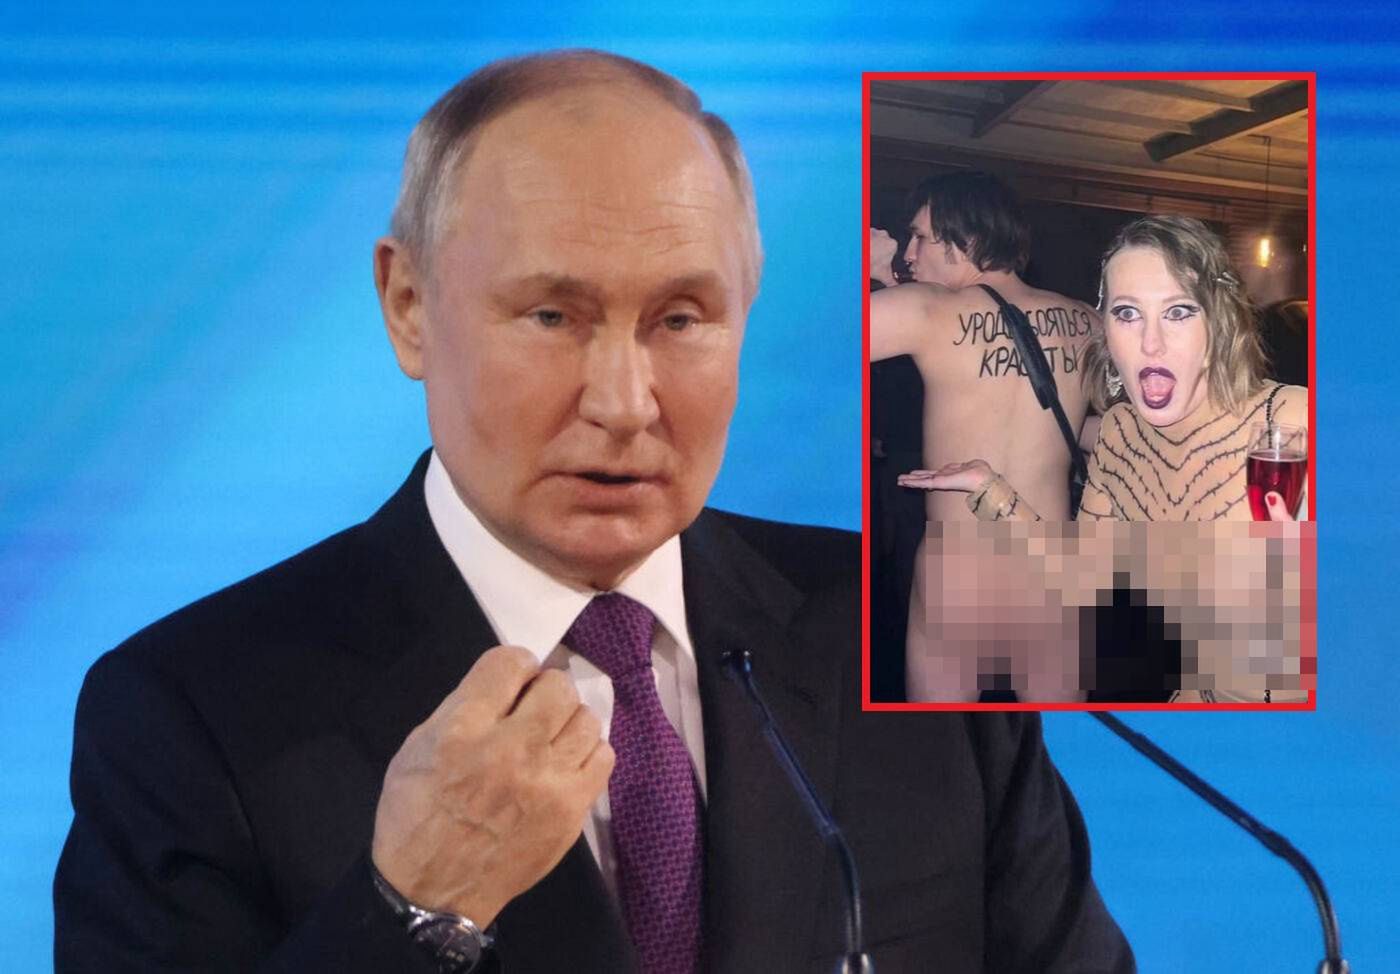 Chrześnica Putina na nagiej imprezie. Zdjęcia krążą w sieci